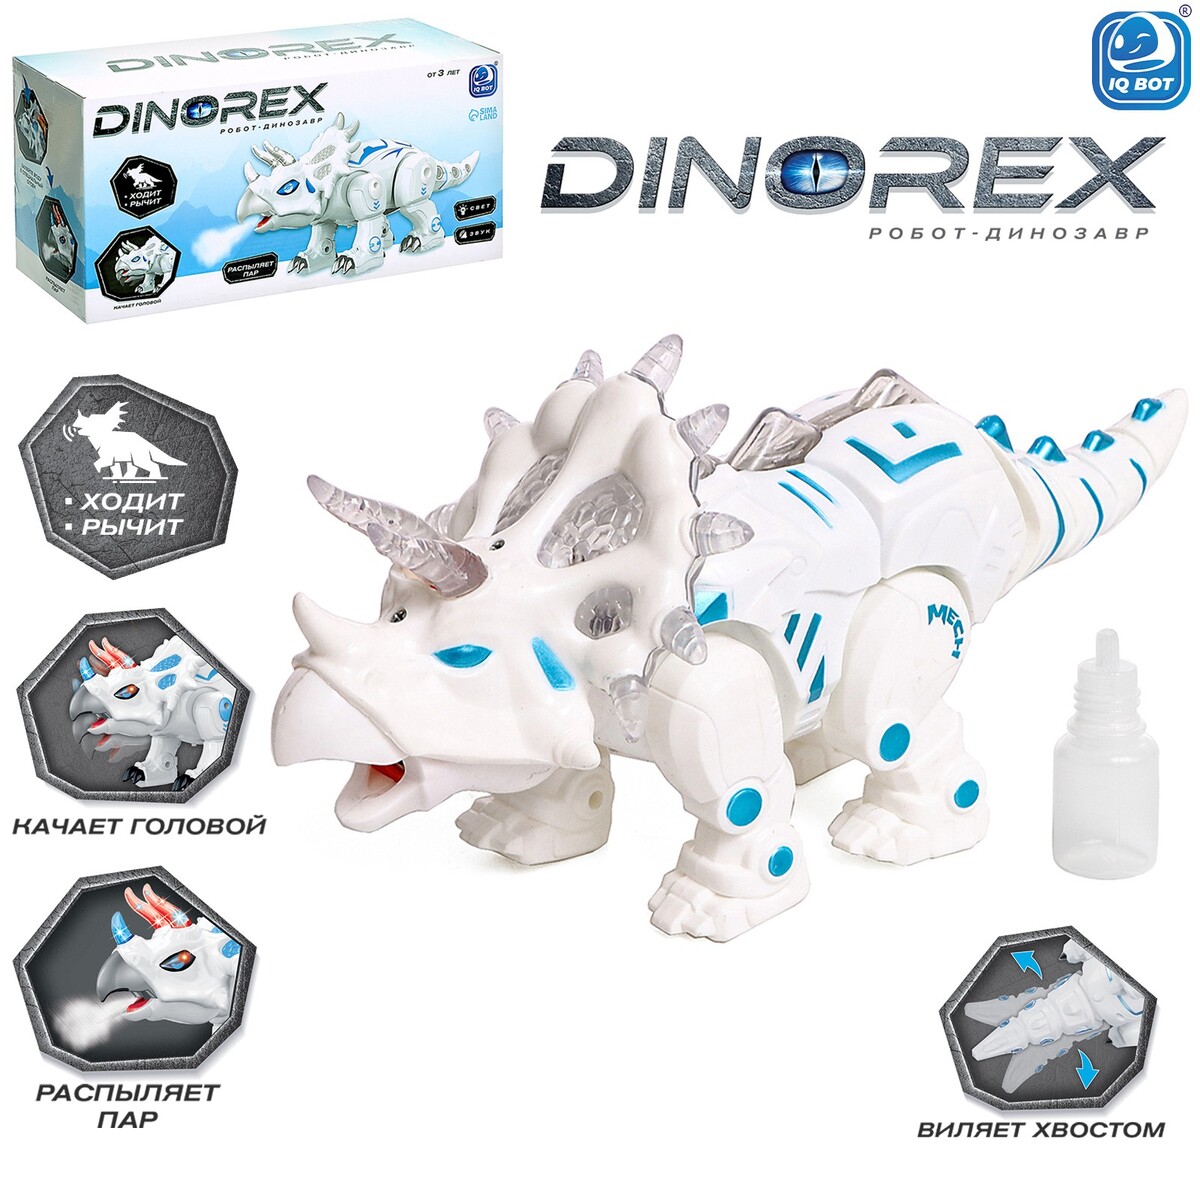 Робот динозавр dinorex iq bot, интерактивный: световые и звуковые эффекты, на батарейках интерактивный робот silverlit покибот белый с синим